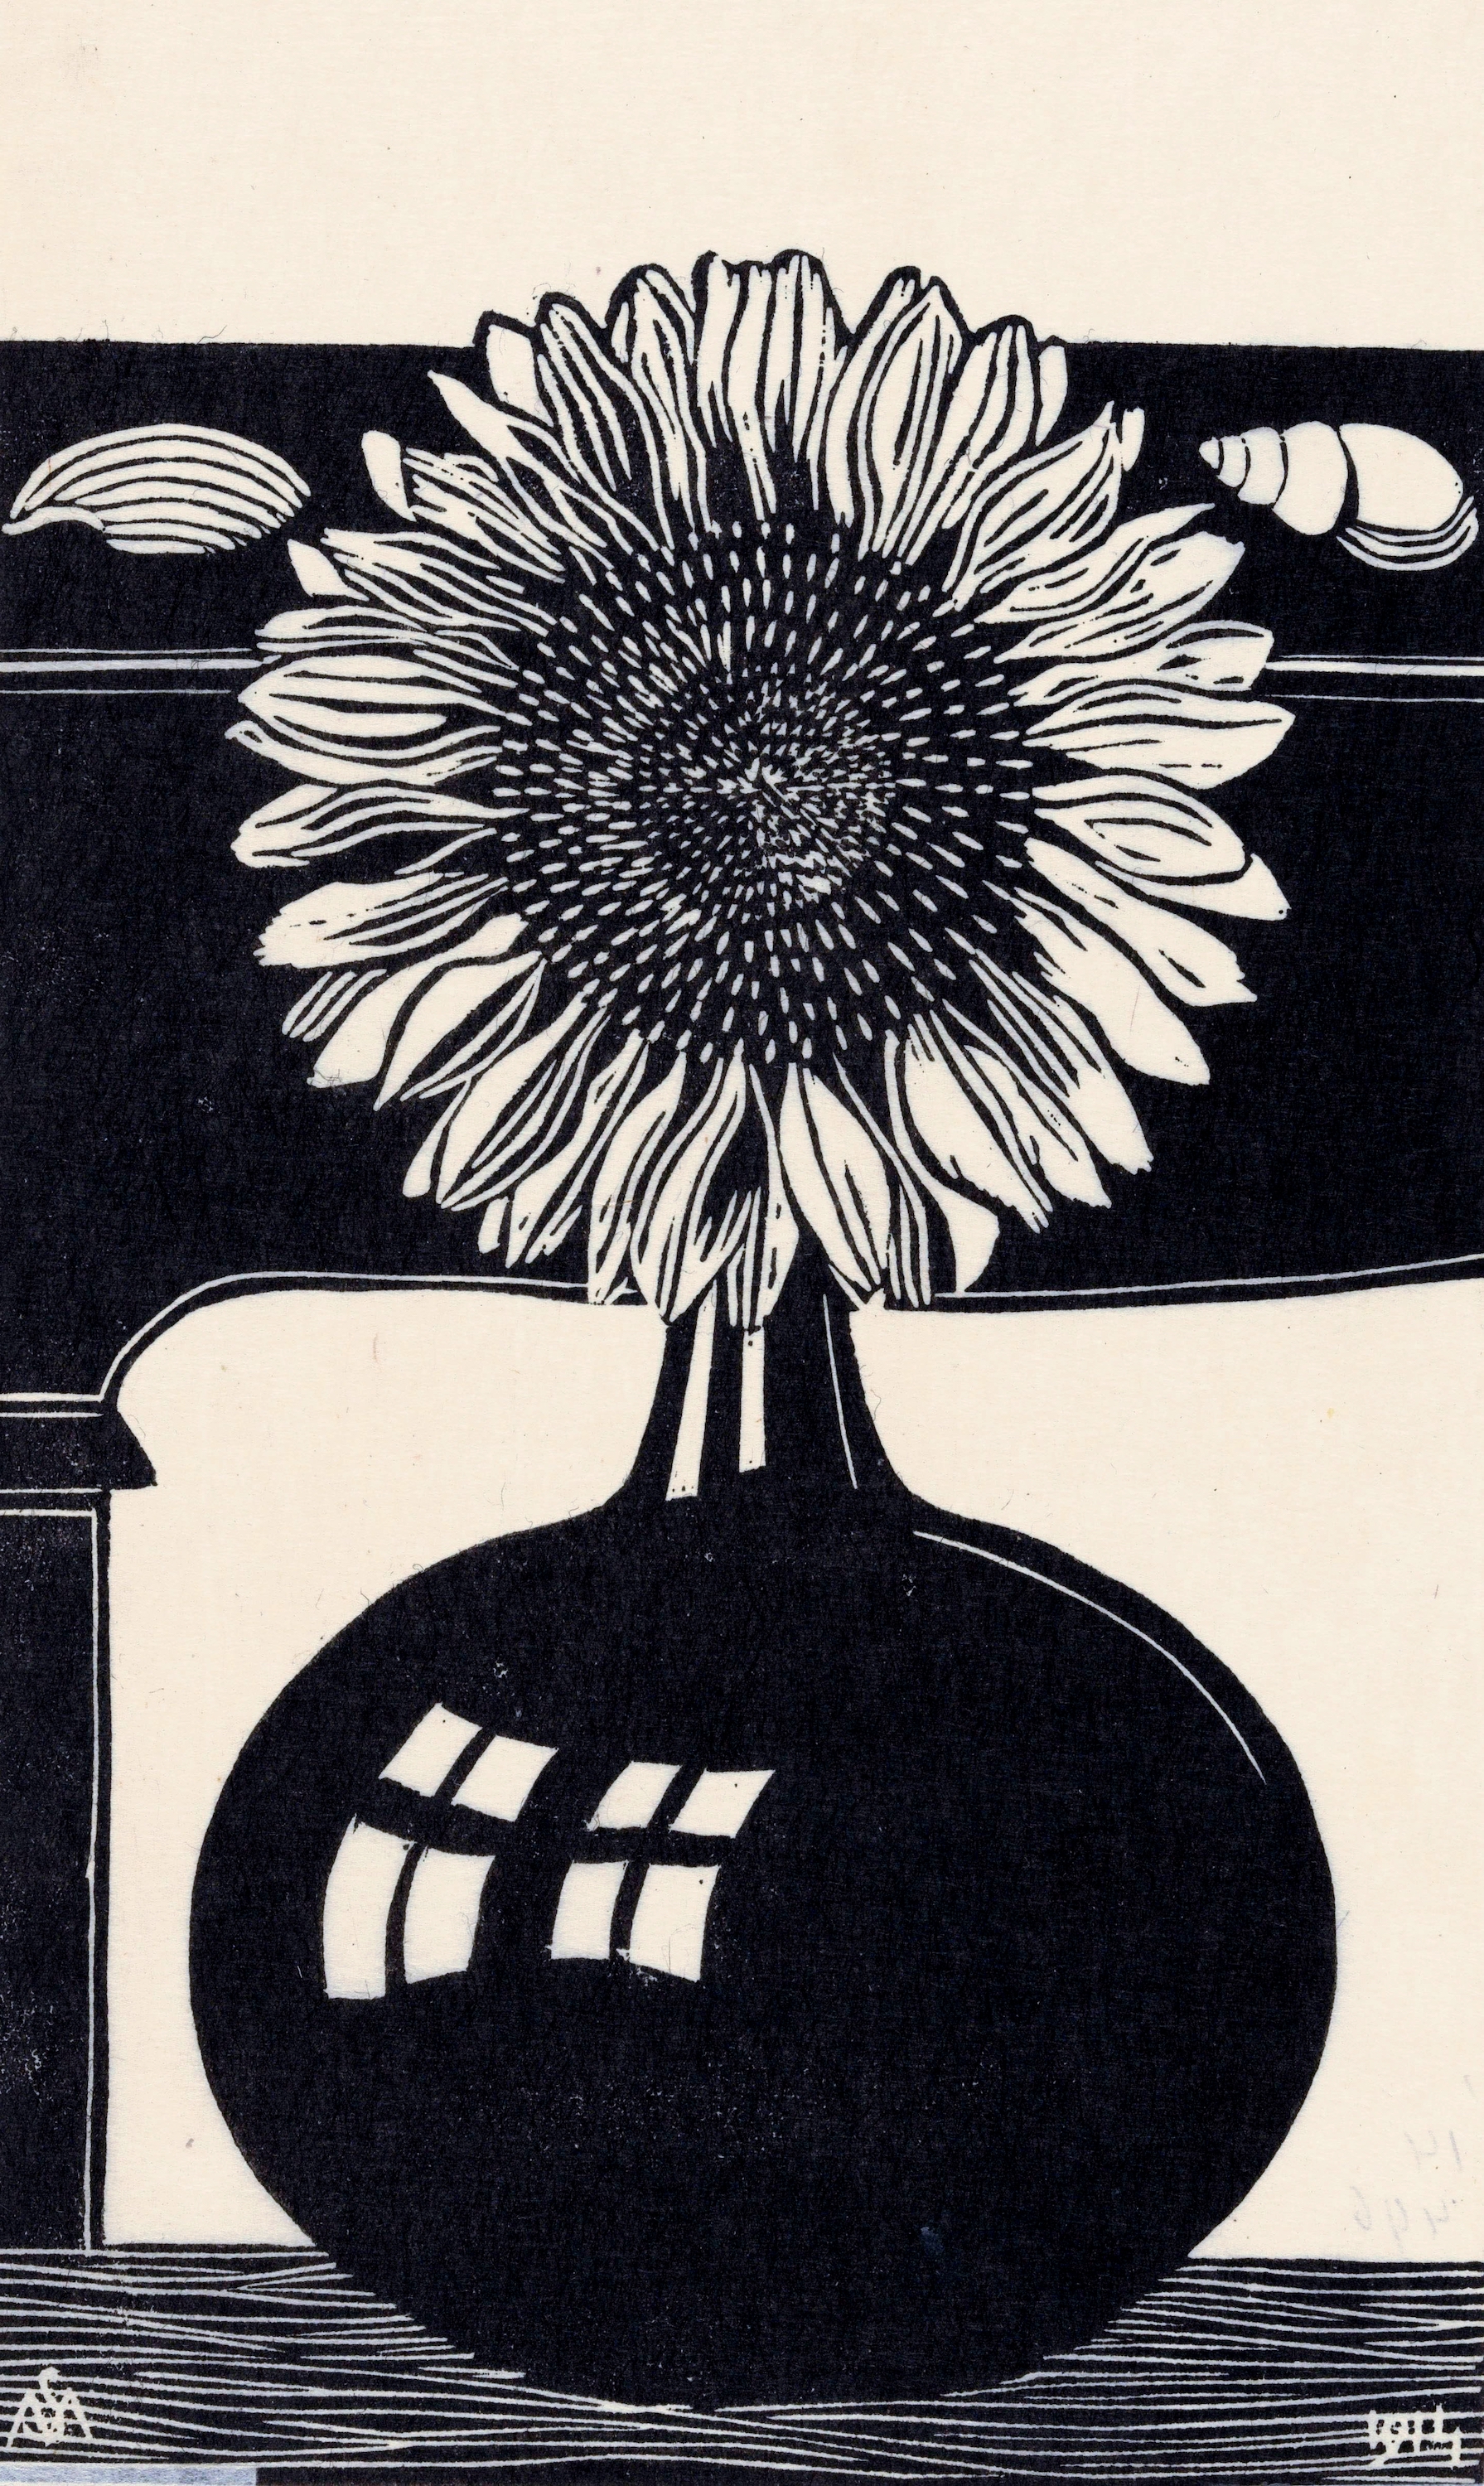 Floarea-soarelui by Samuel Jessurun de Mesquita - 1914 - 29.9 x 19.5 cm 